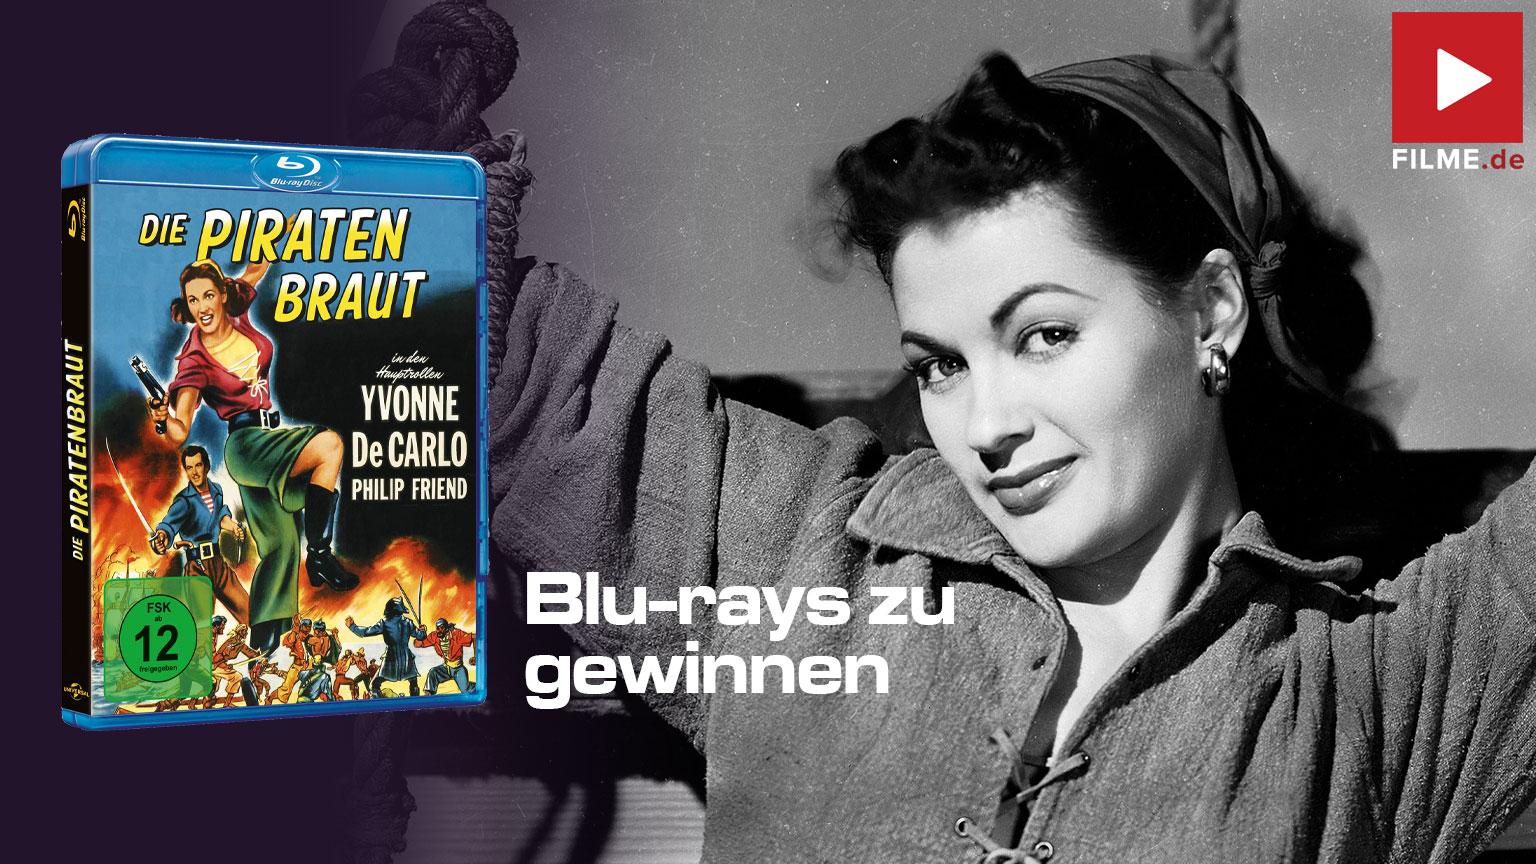 Die Piratenbraut Film 1950 Blu-ray Gewinnspiel gewinnen shop kaufen Artikelbild